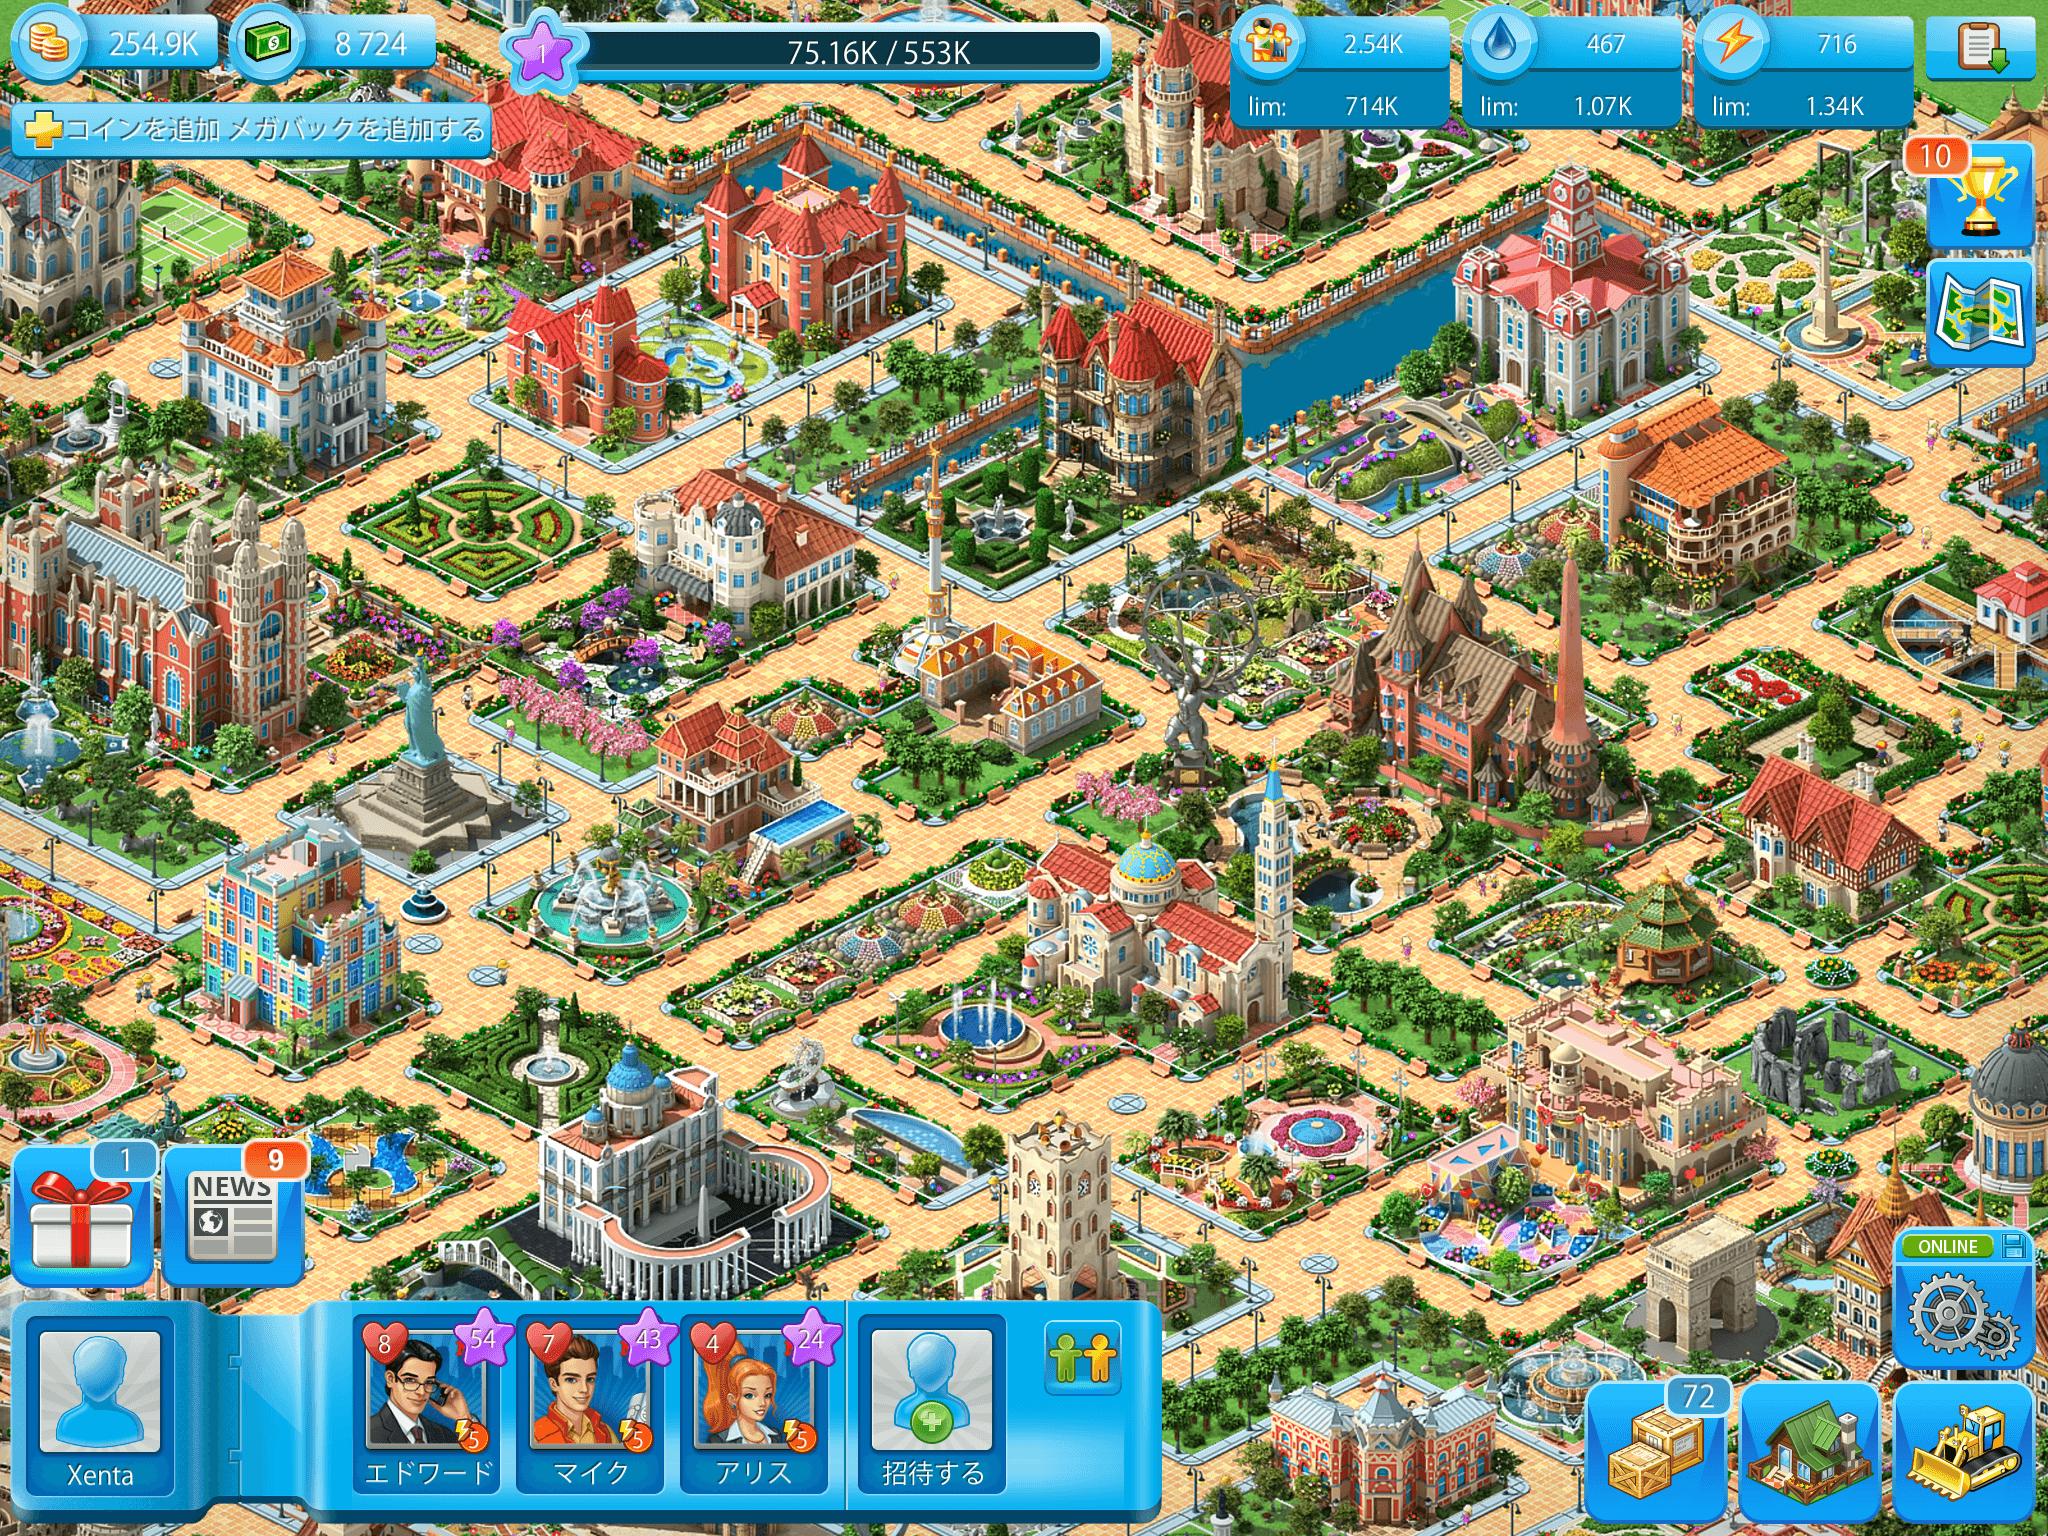 Android 用の メガポリス Megapolis 街づくりゲーム 無料 Apk をダウンロード